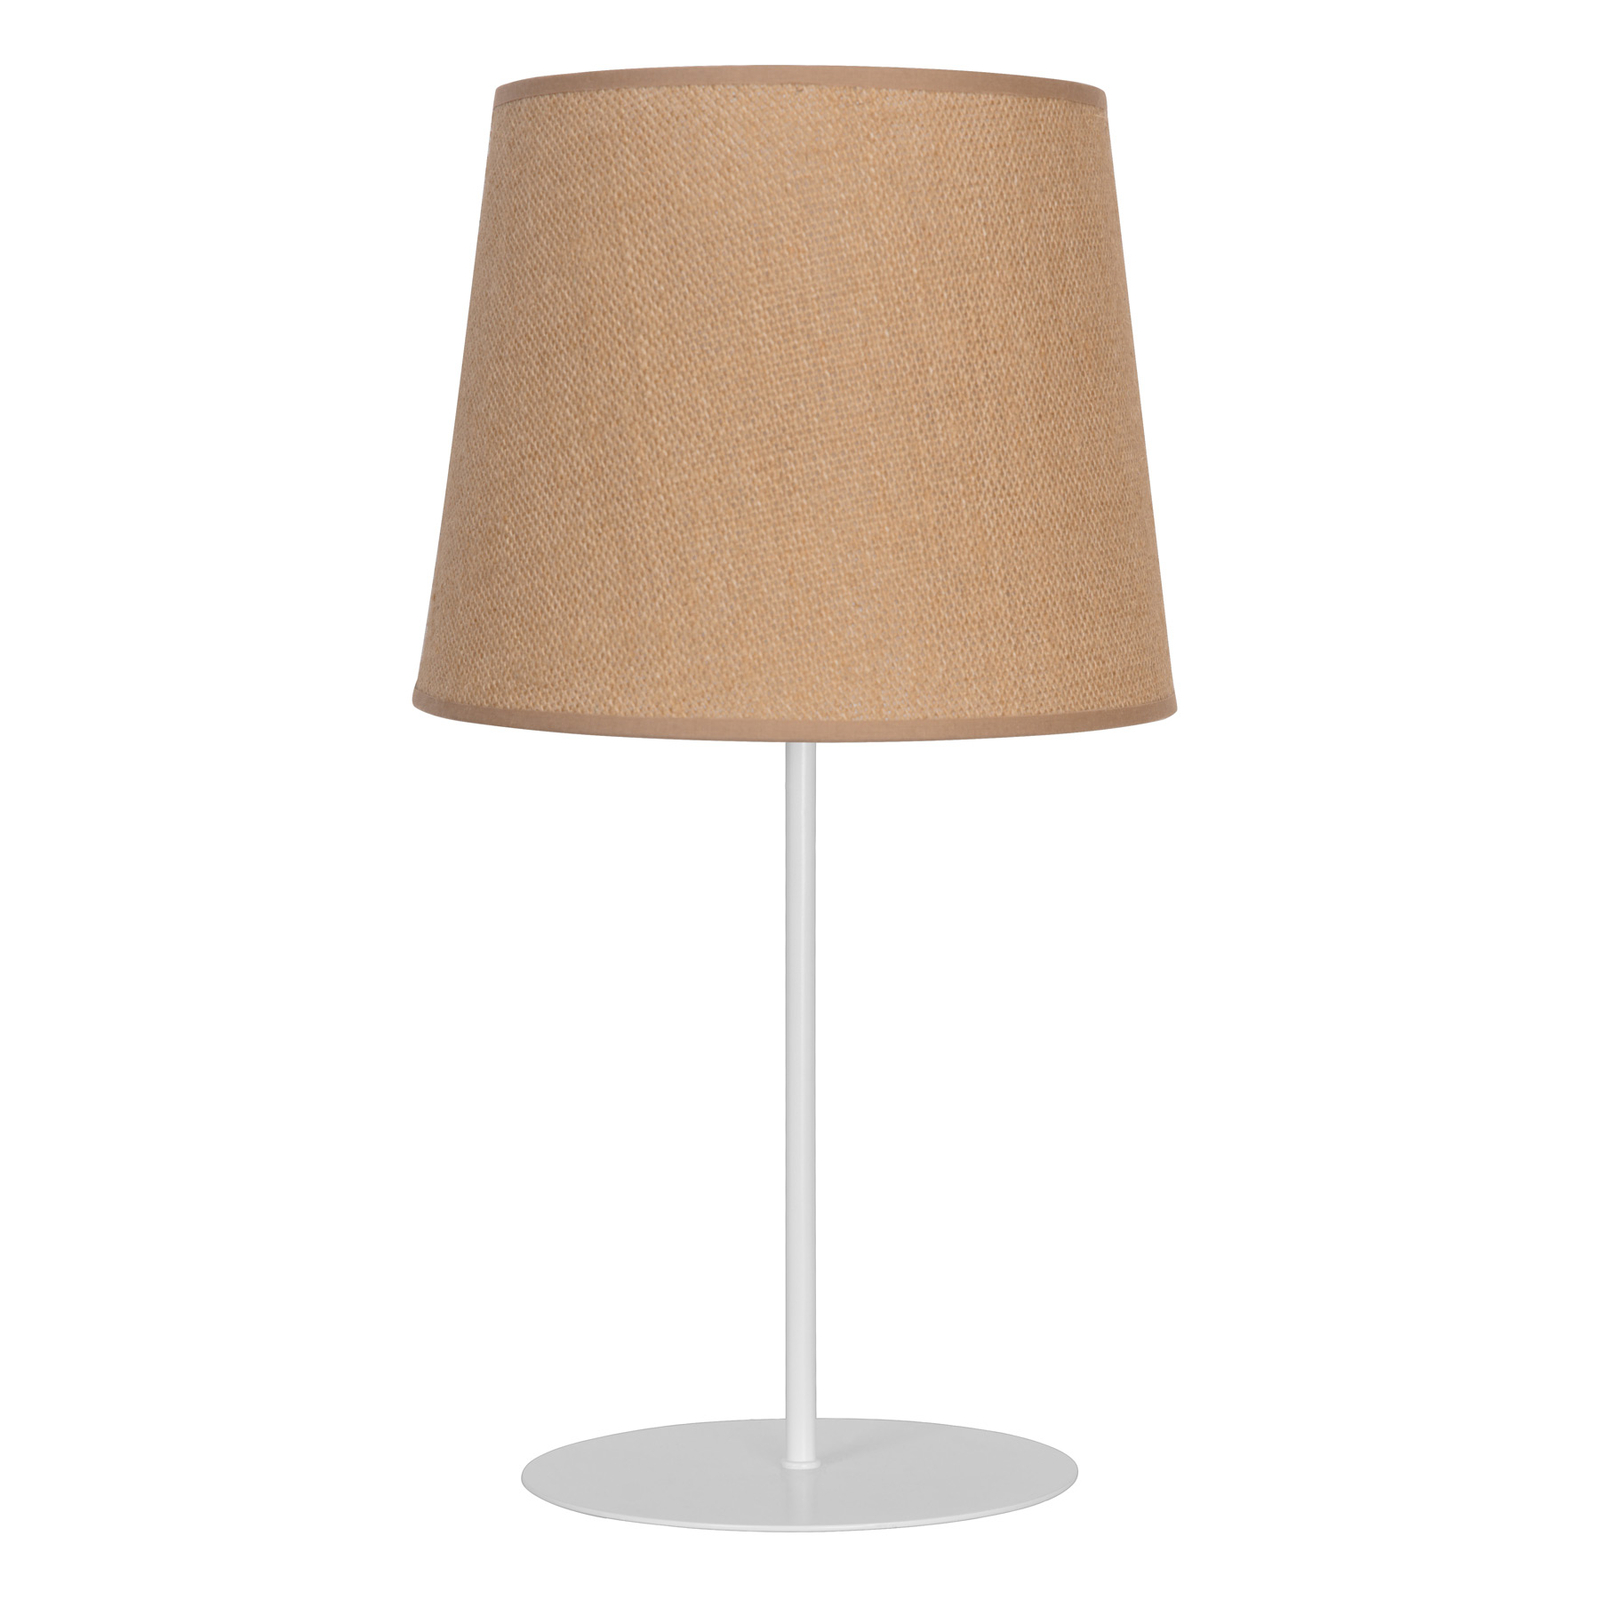 Jute table lamp, natural brown, 50 cm high